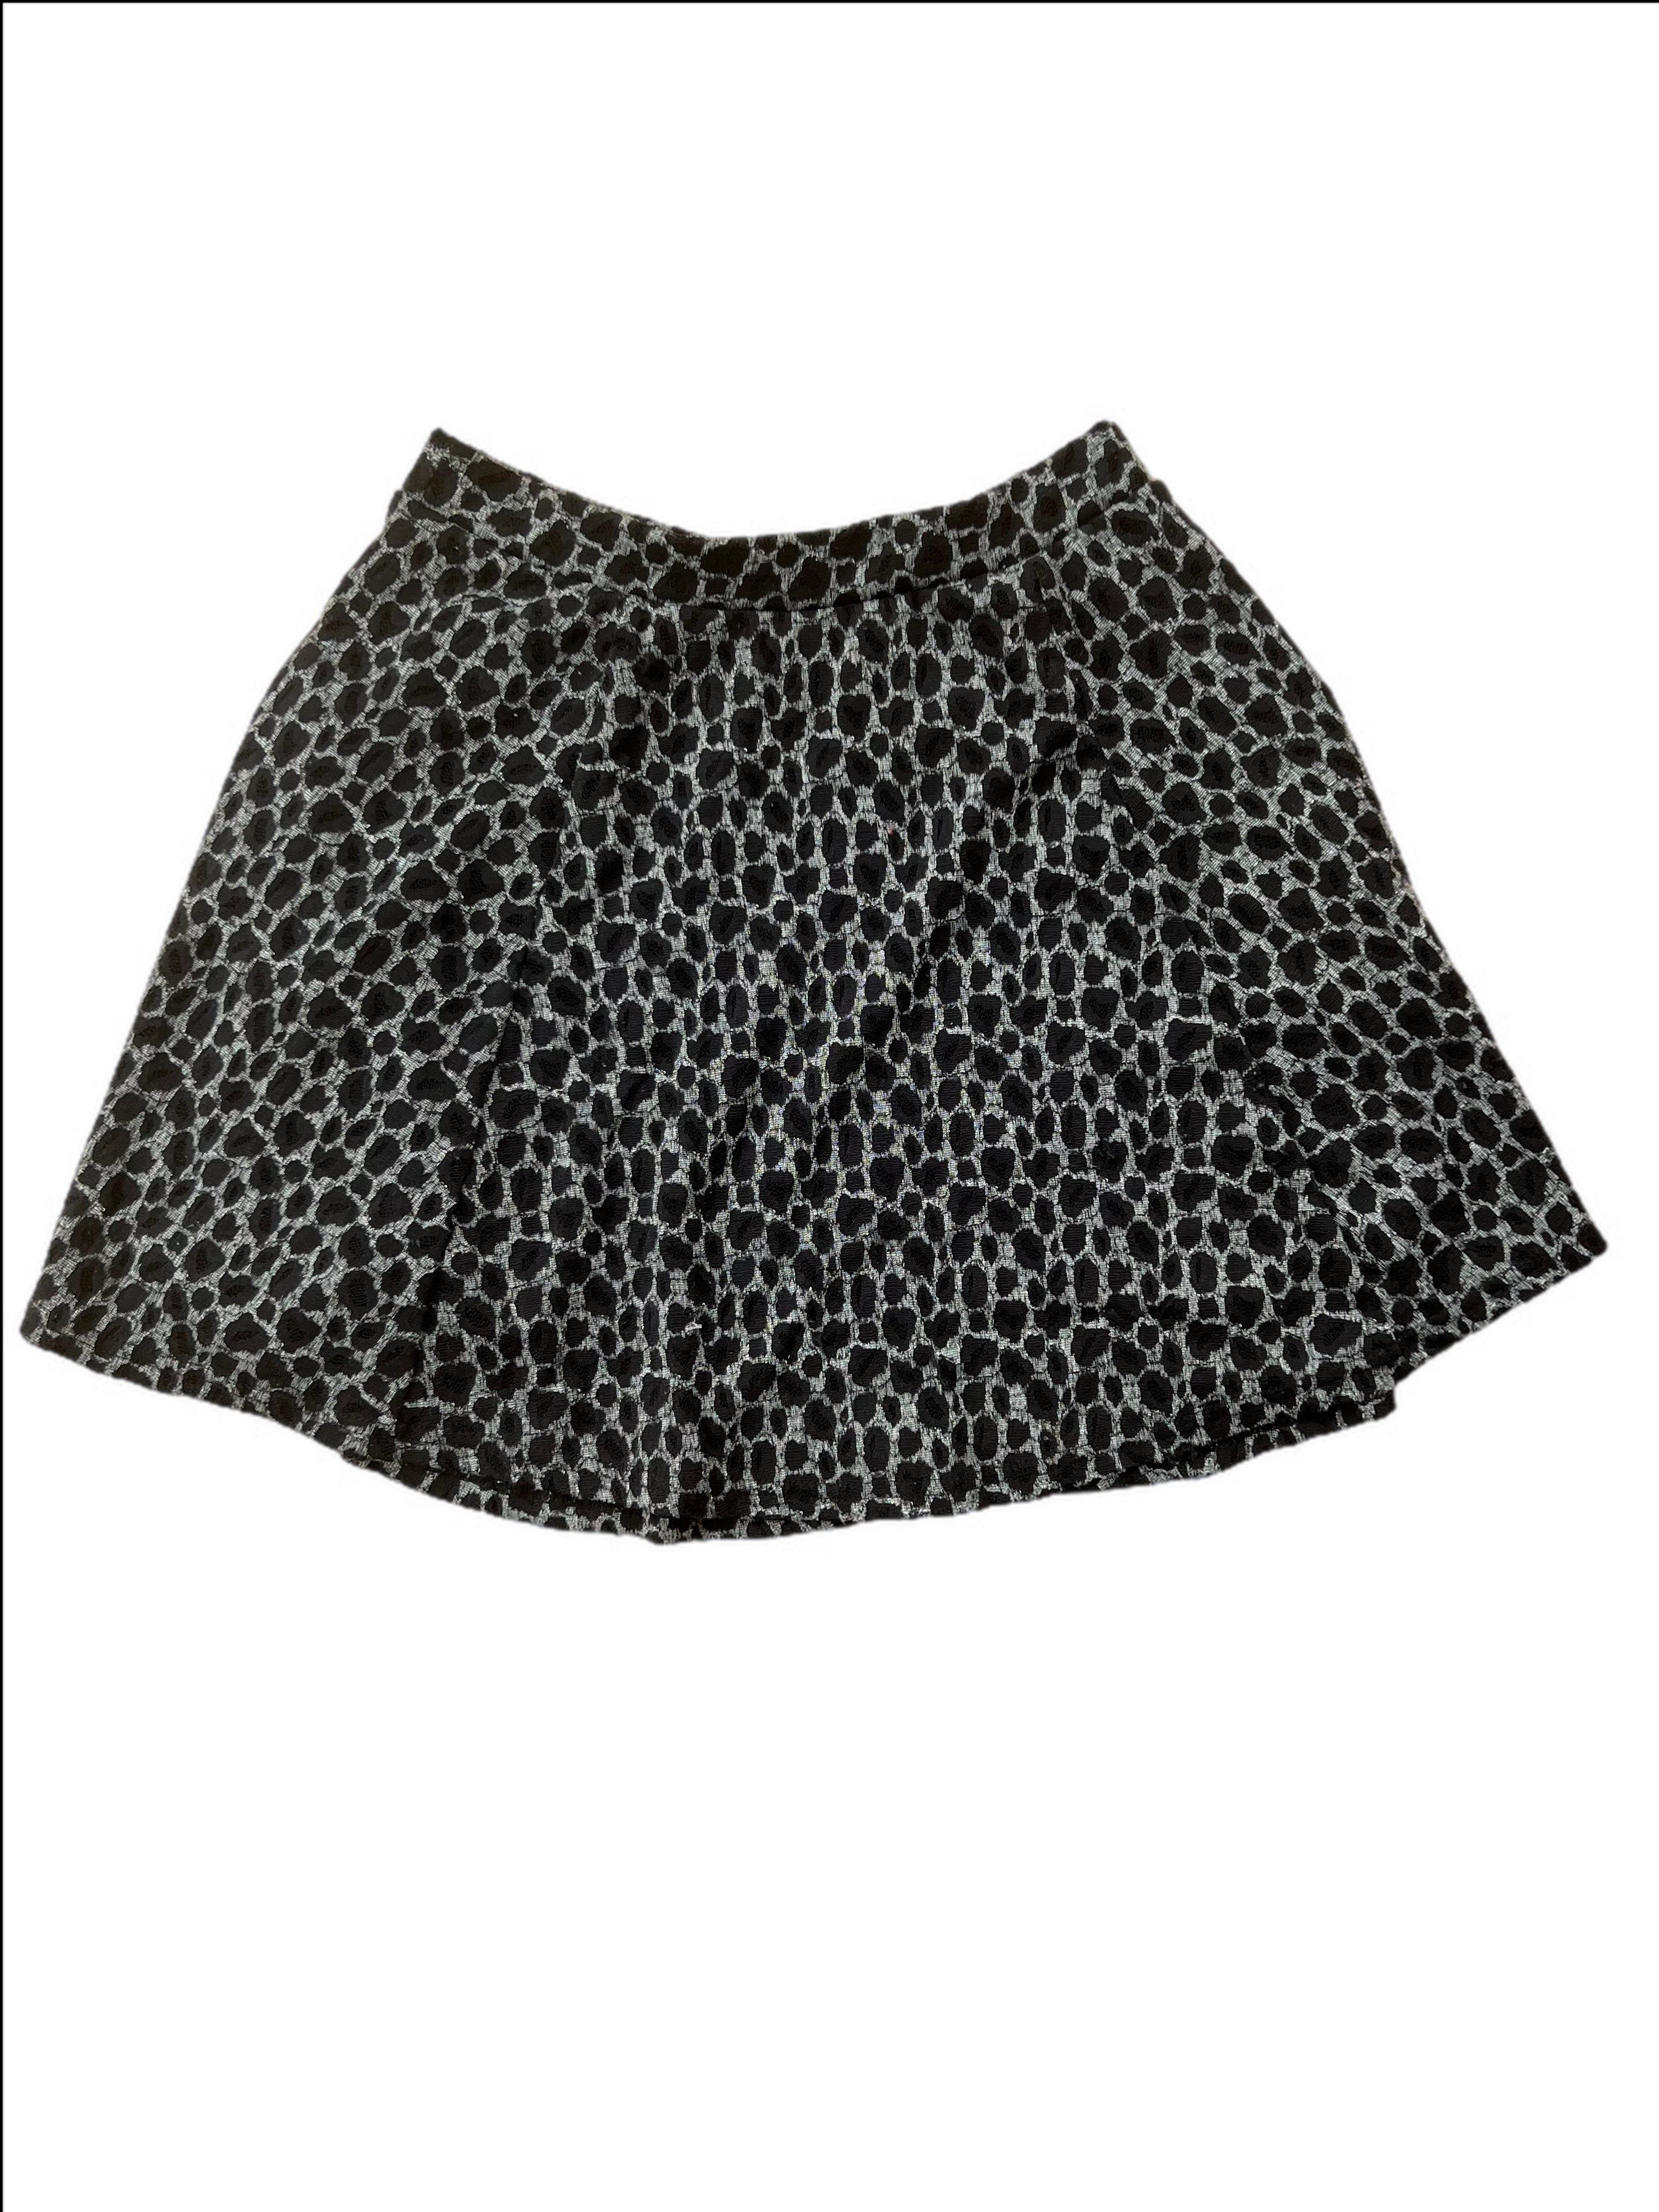 Leopard Print Burnout A-Line Skirt